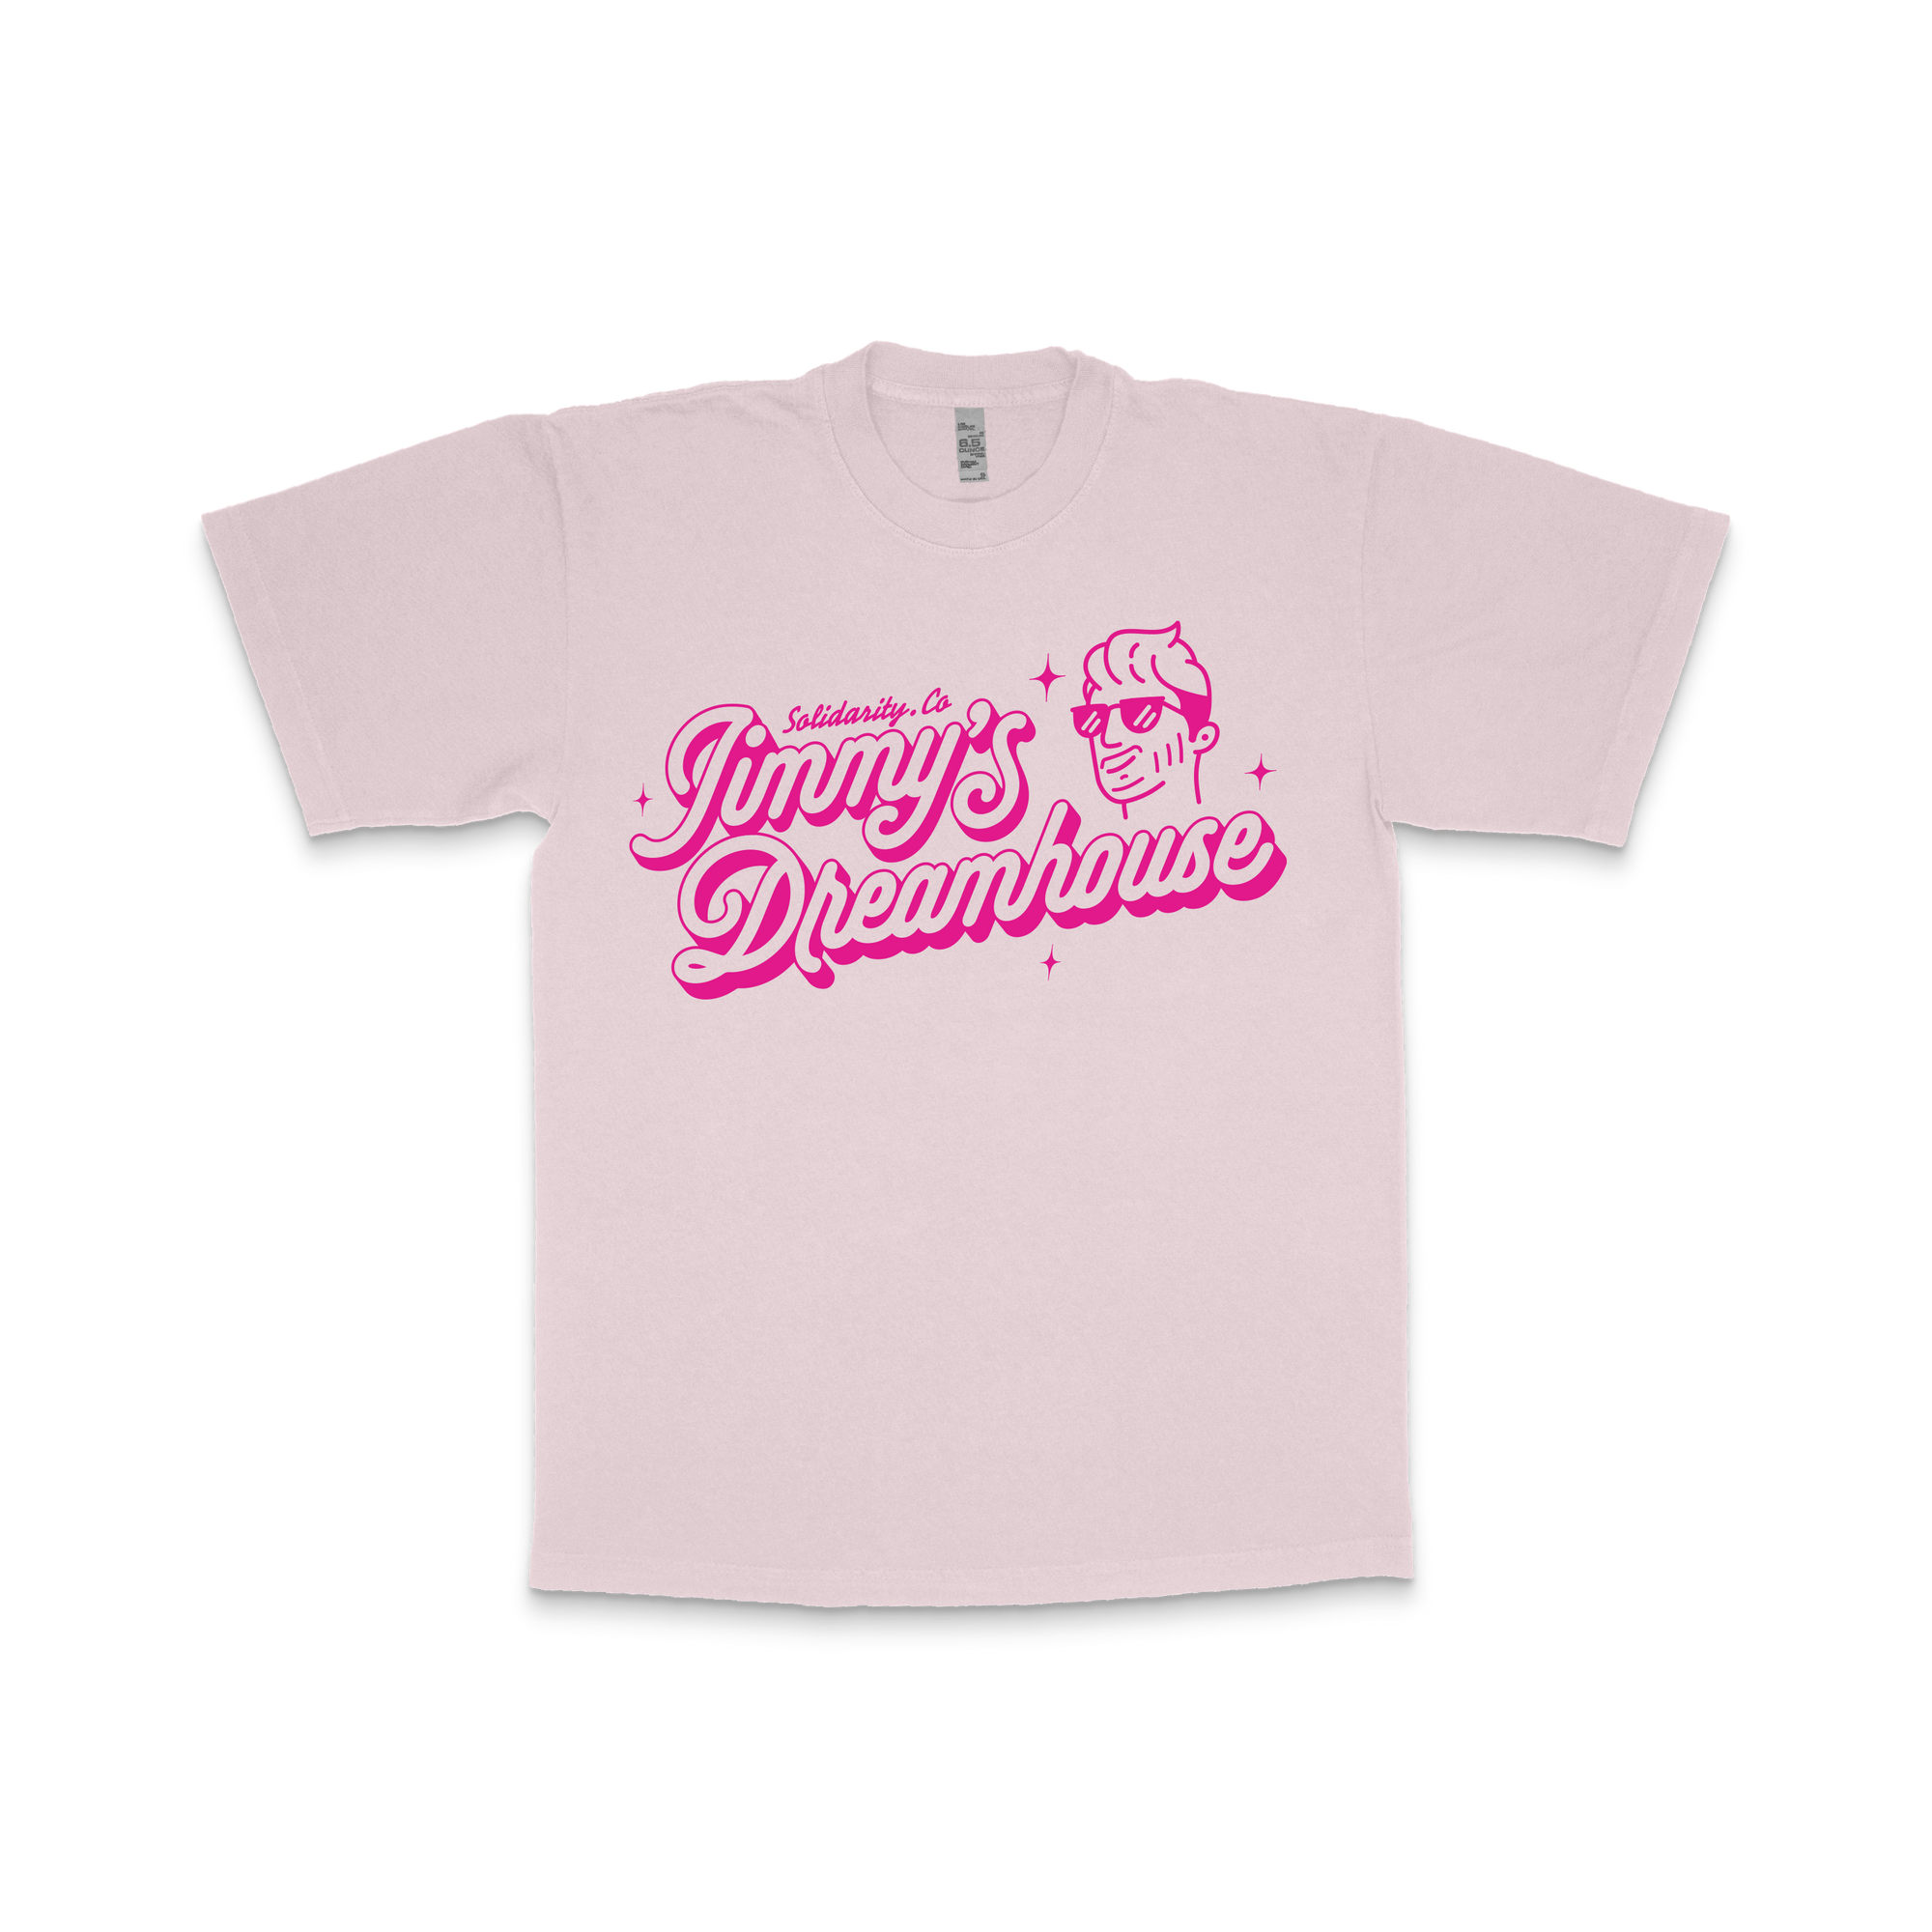 Jimmy's Dreamhouse T-Shirt